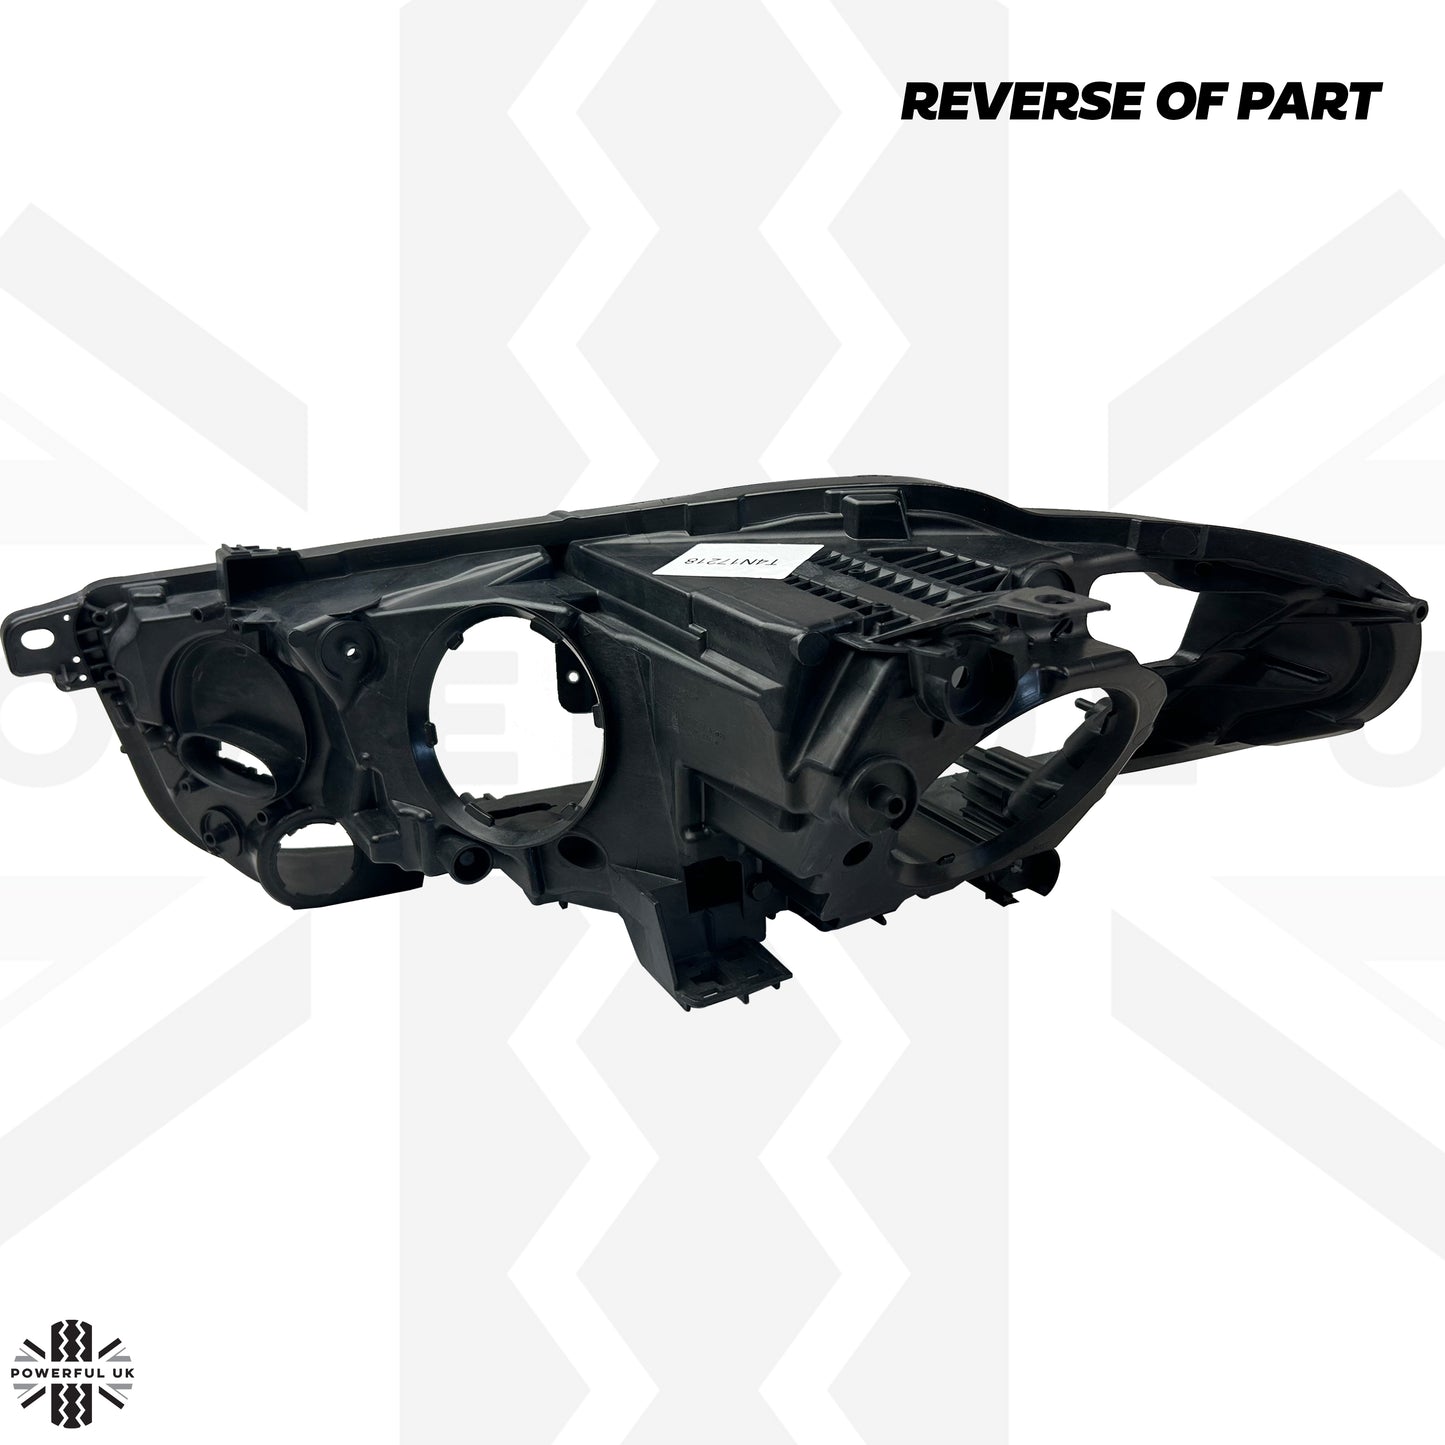 Replacement Headlight Rear Housing for Jaguar XE 2015-19 - RH